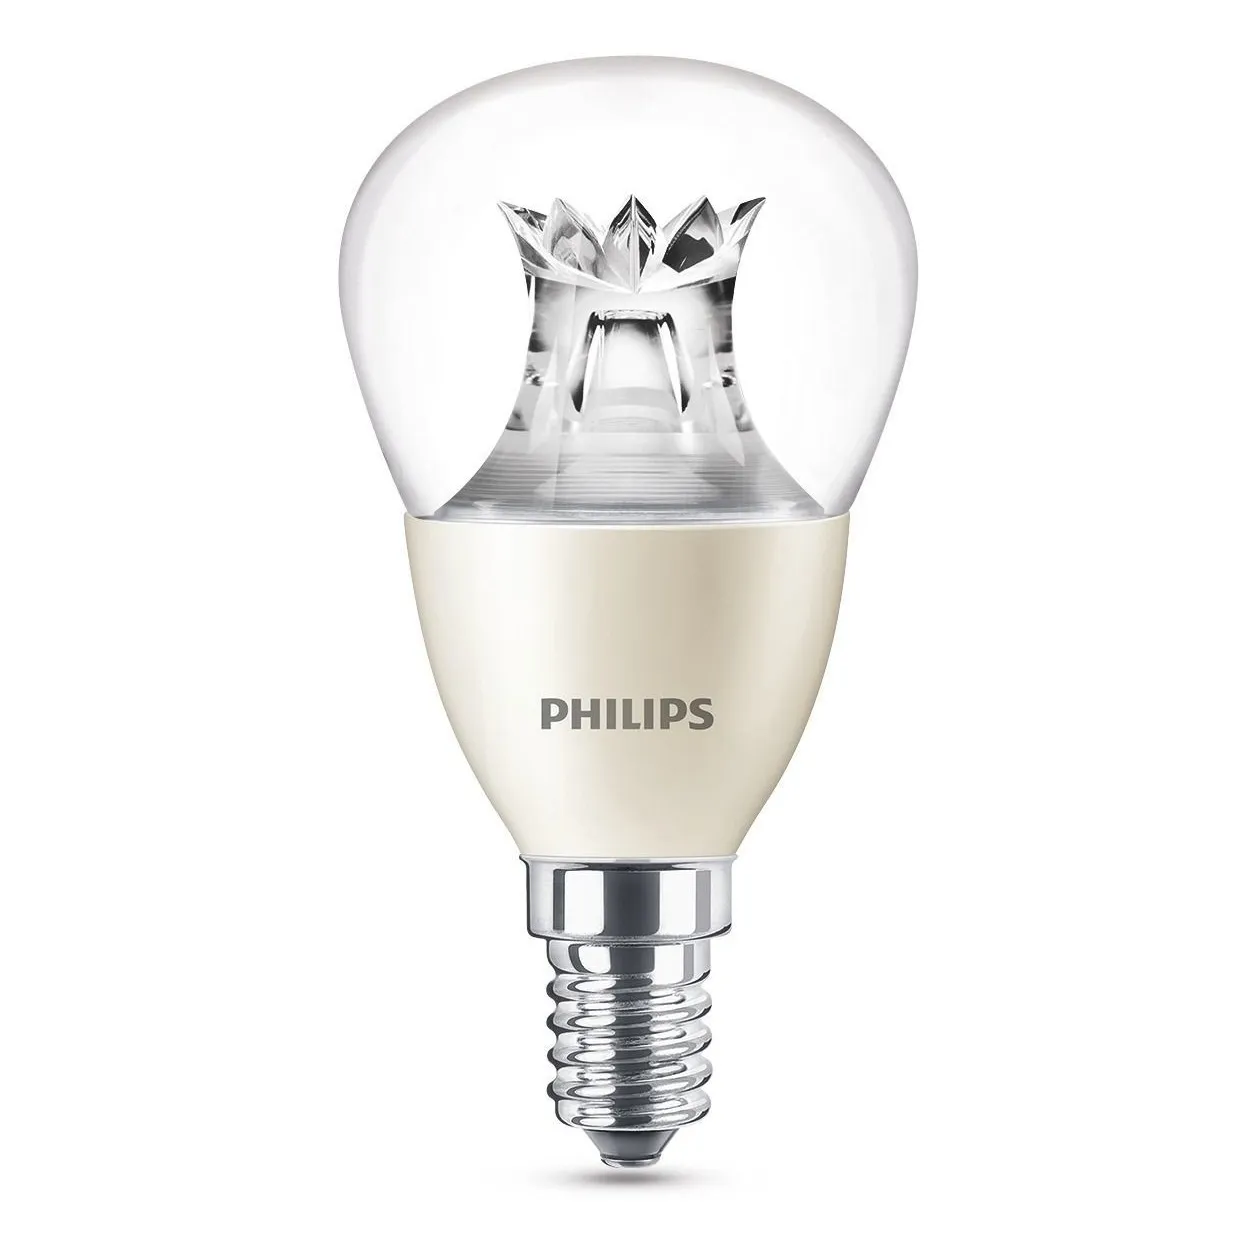 Philips LED lamp E14 6W 470Lm kogel helder dimbaar